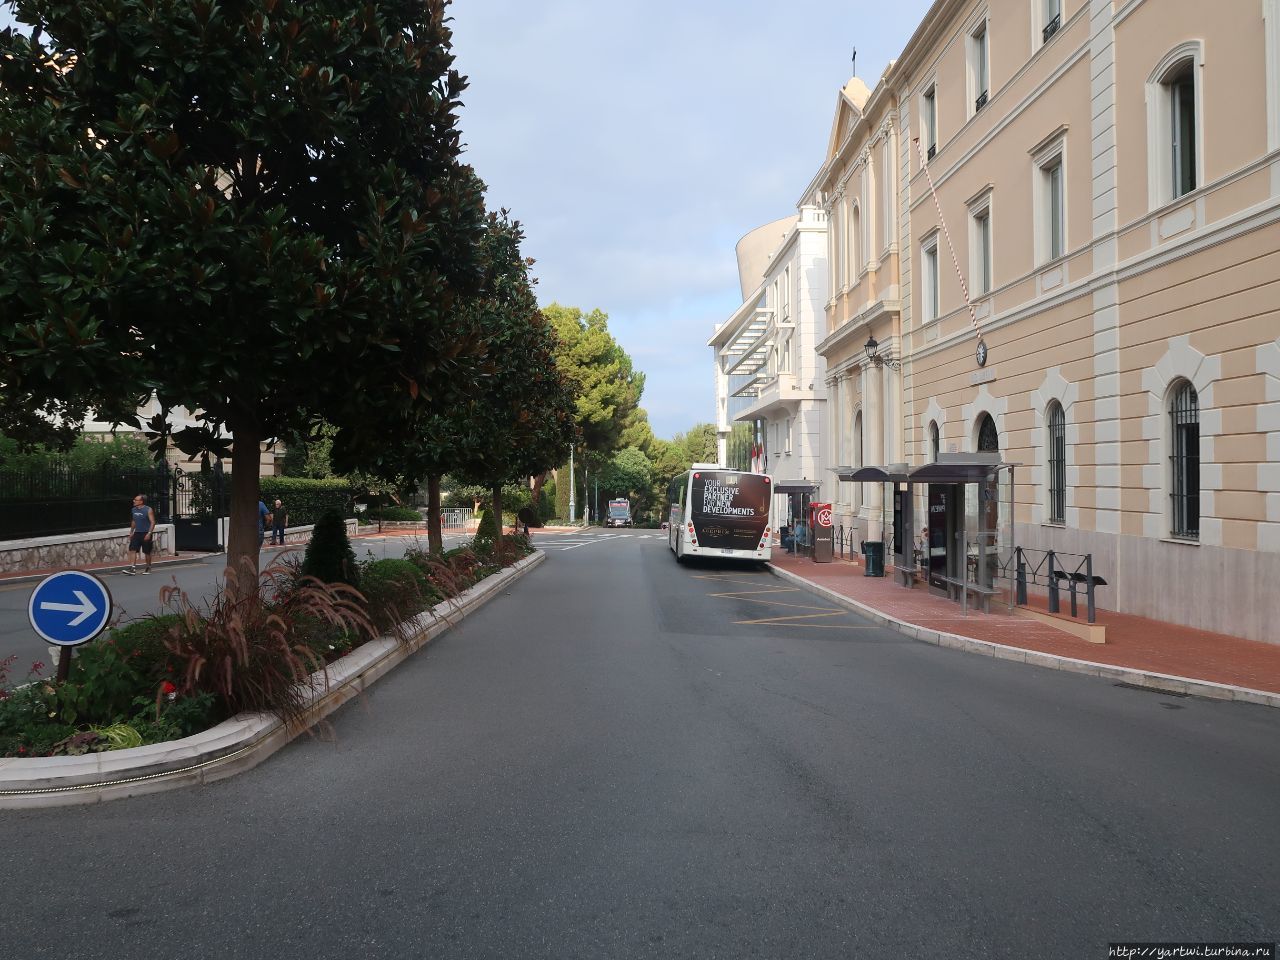 В Монако-Вилль есть и современные сравнительно широкие улицы с остановками для общественного транспорта. На остановках имеются USB-розетки для подзарядки мобильных телефонов. Монако